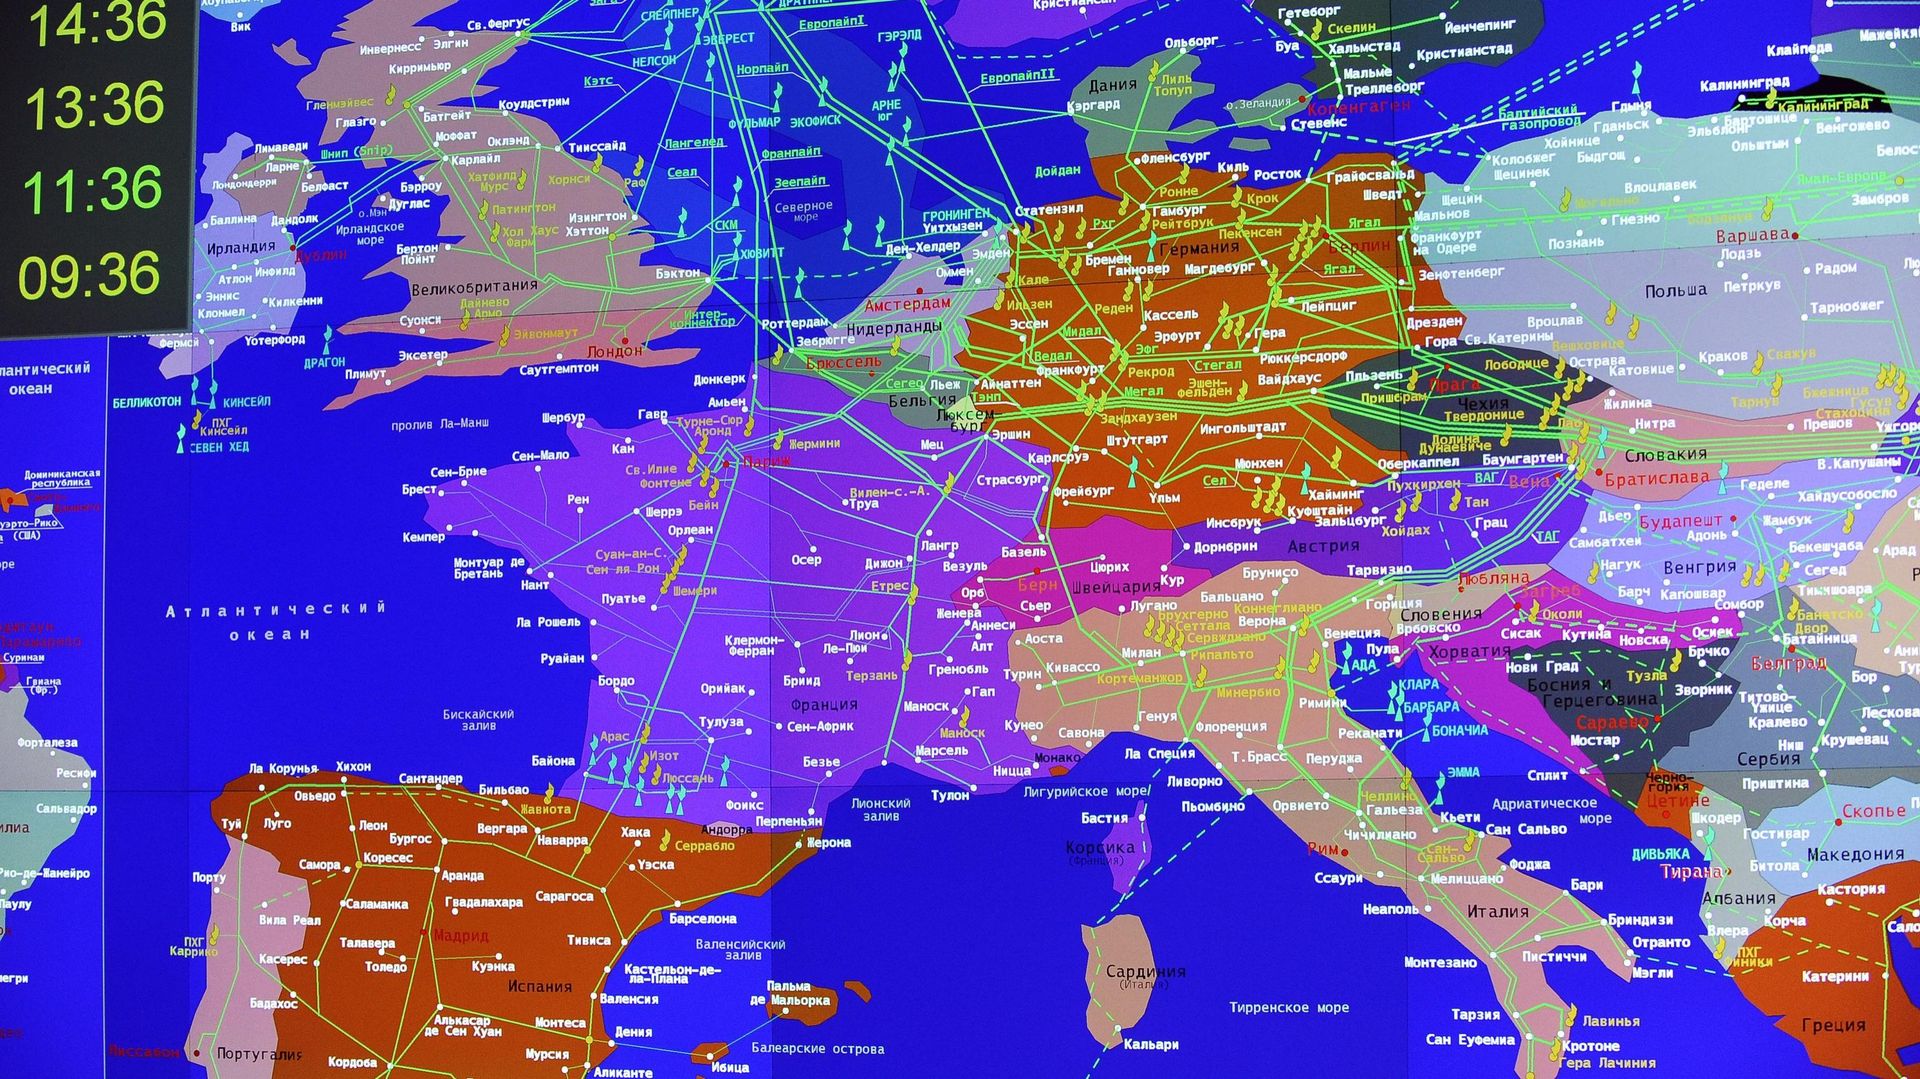 Le réseau Gazprom s'étend sur une grande partie de l'Europe